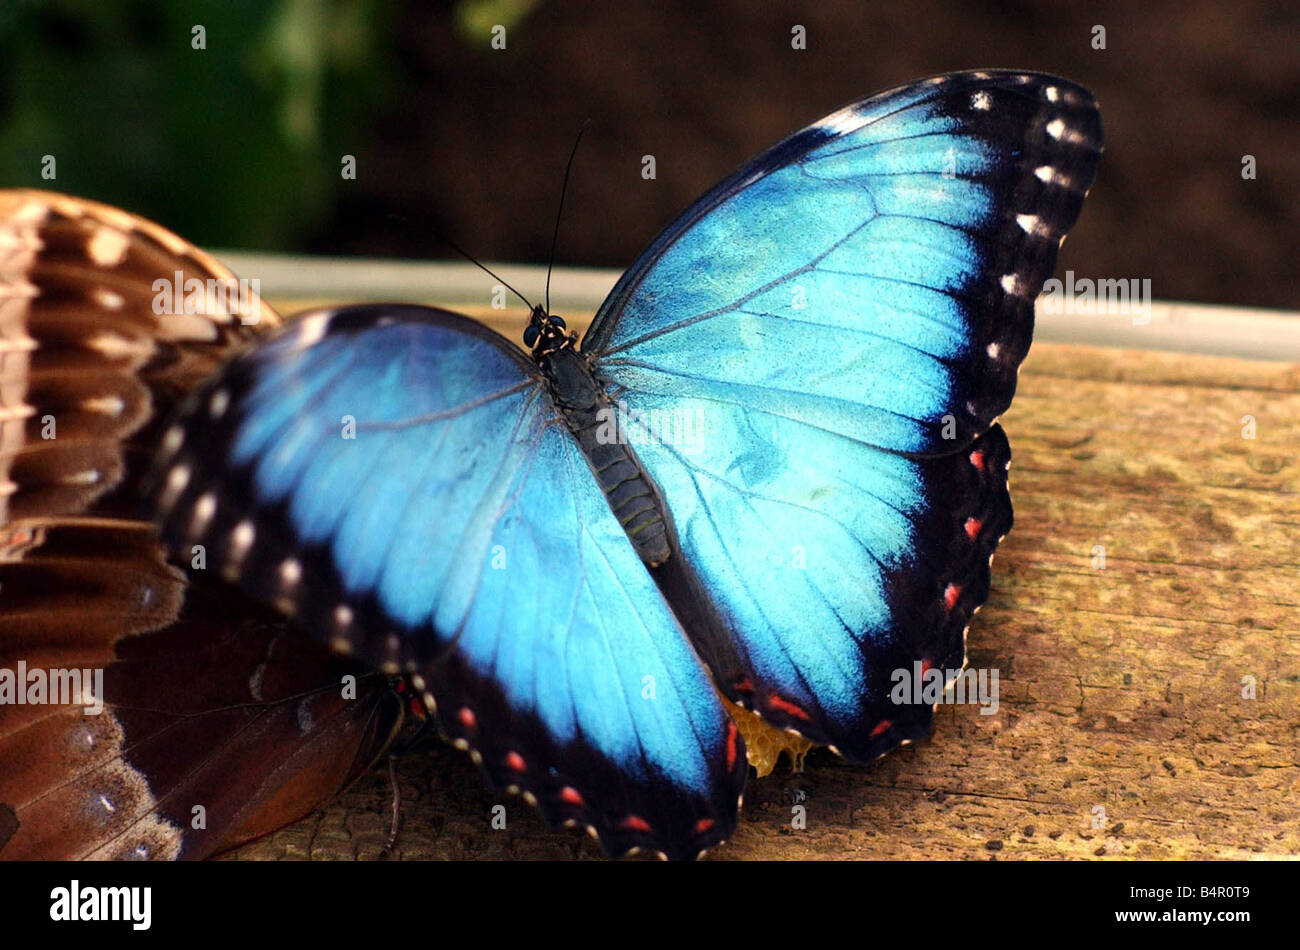 Le blue morpho butterfly à l'uopn Avon Stratford Butterfly Farm ce beau bleu en haut de l'aile de l'insecte qui s'il s'appelle à distinguer de tous les autres morphos bleu Banque D'Images